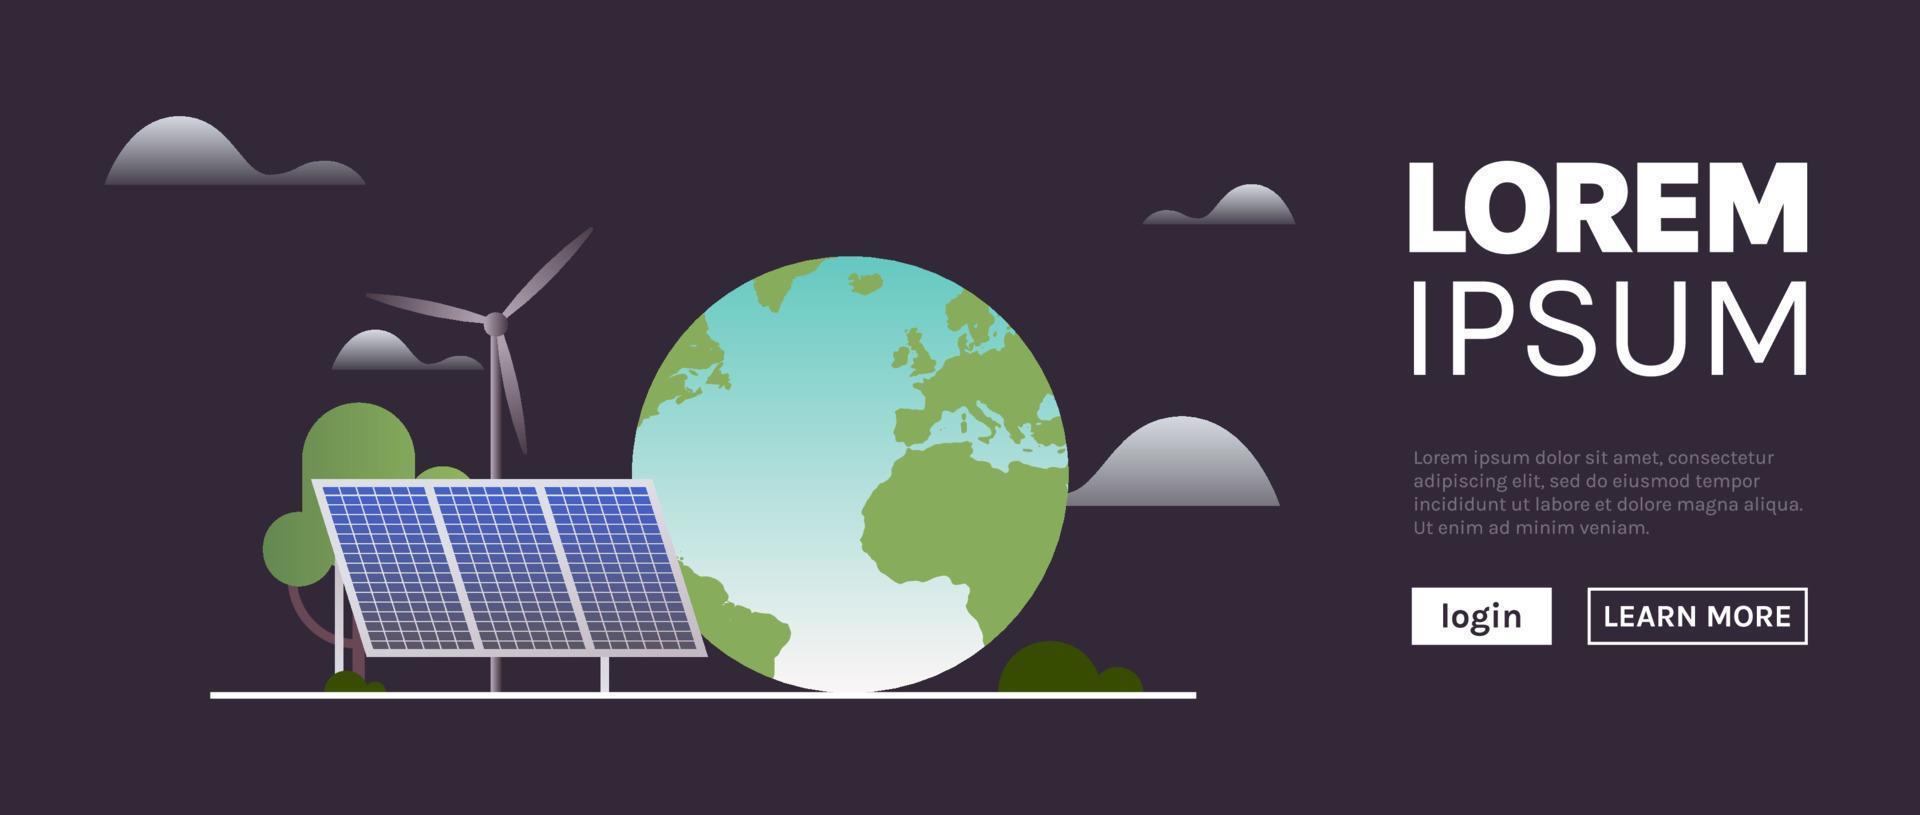 hållbarhet och t.ex. grön, energi, hållbar industri med väderkvarnar och sol- energi paneler, miljö, social, företags- styrning begrepp platt vektor illustration.